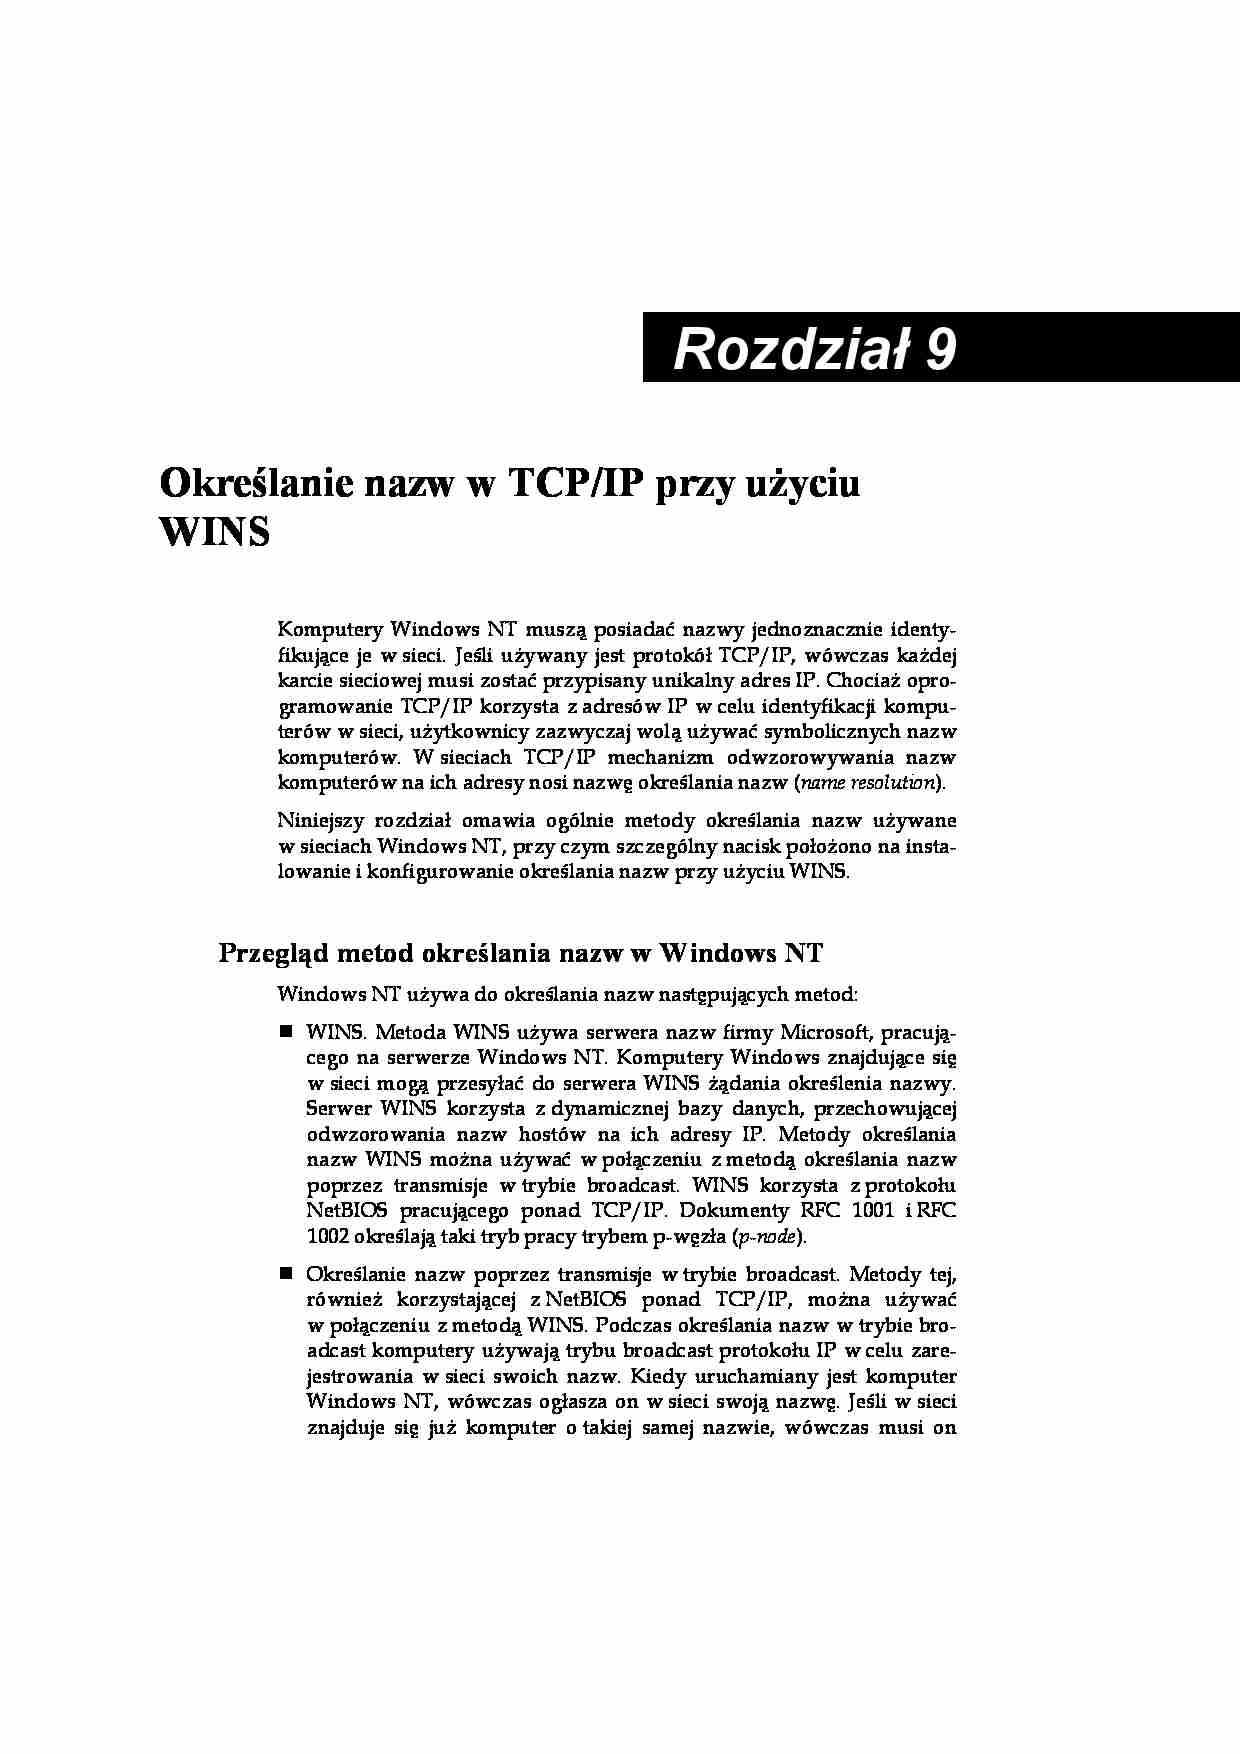 Architektura TCP IP w Windows 9 - strona 1